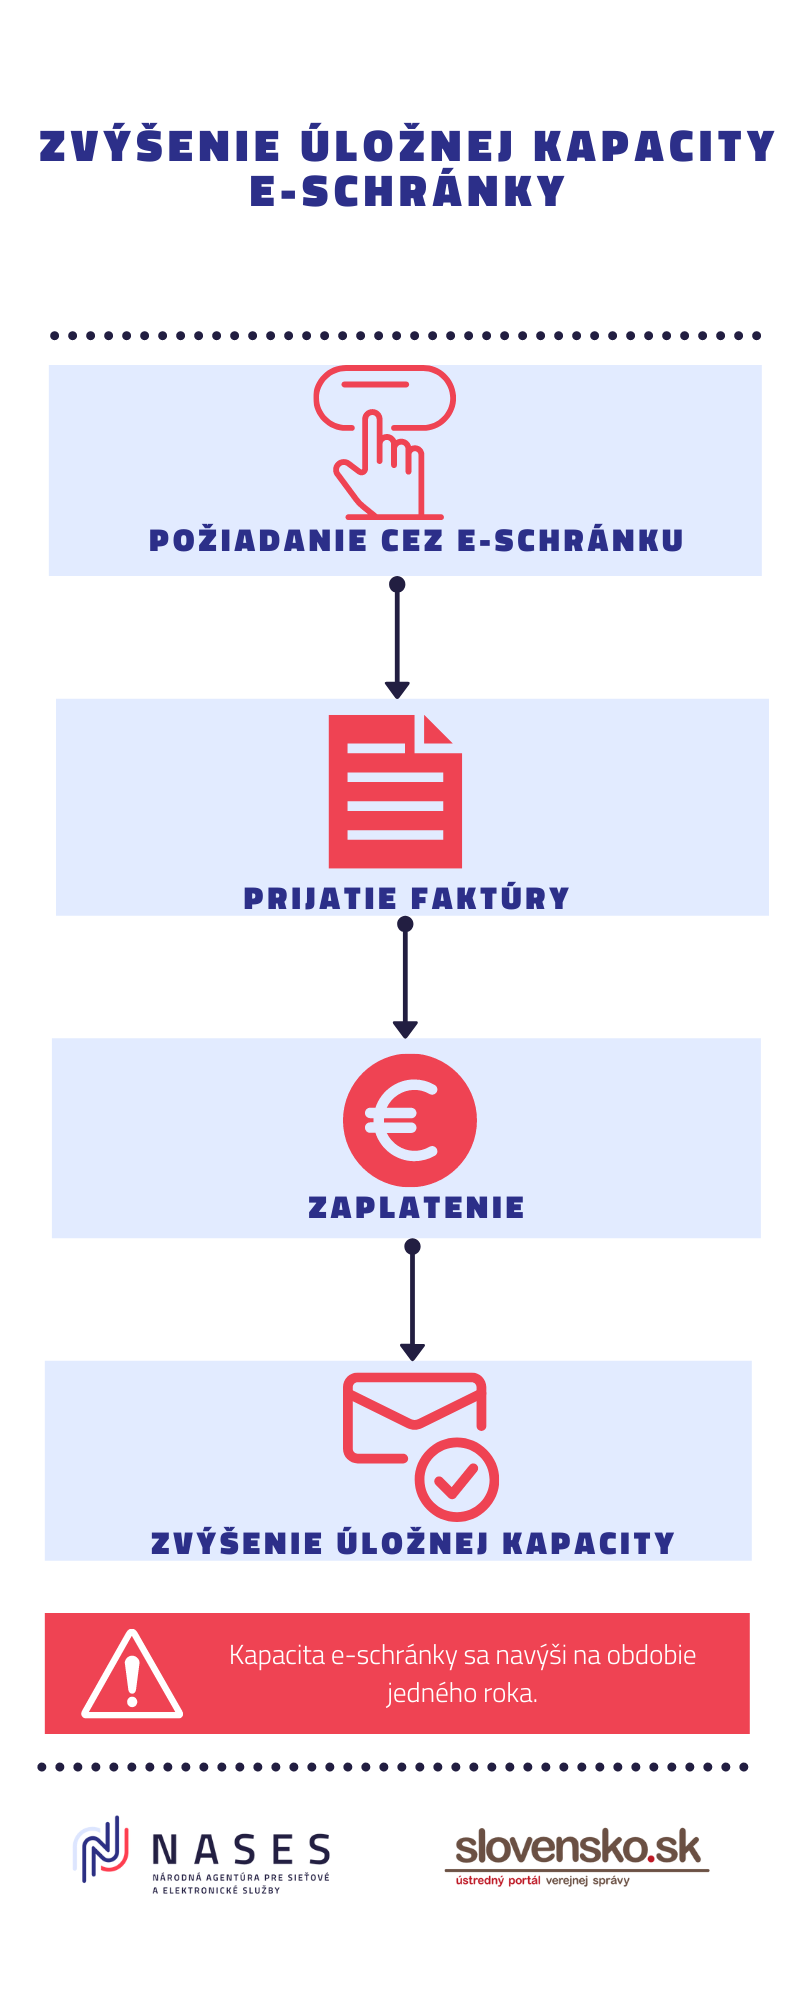 Ilustračná informačná grafika procesu zvýšenia úložnej kapacity e-schránky v štyroch krokoch: požiadanie, prijatie a zaplatenie faktúry a následné navýšenie